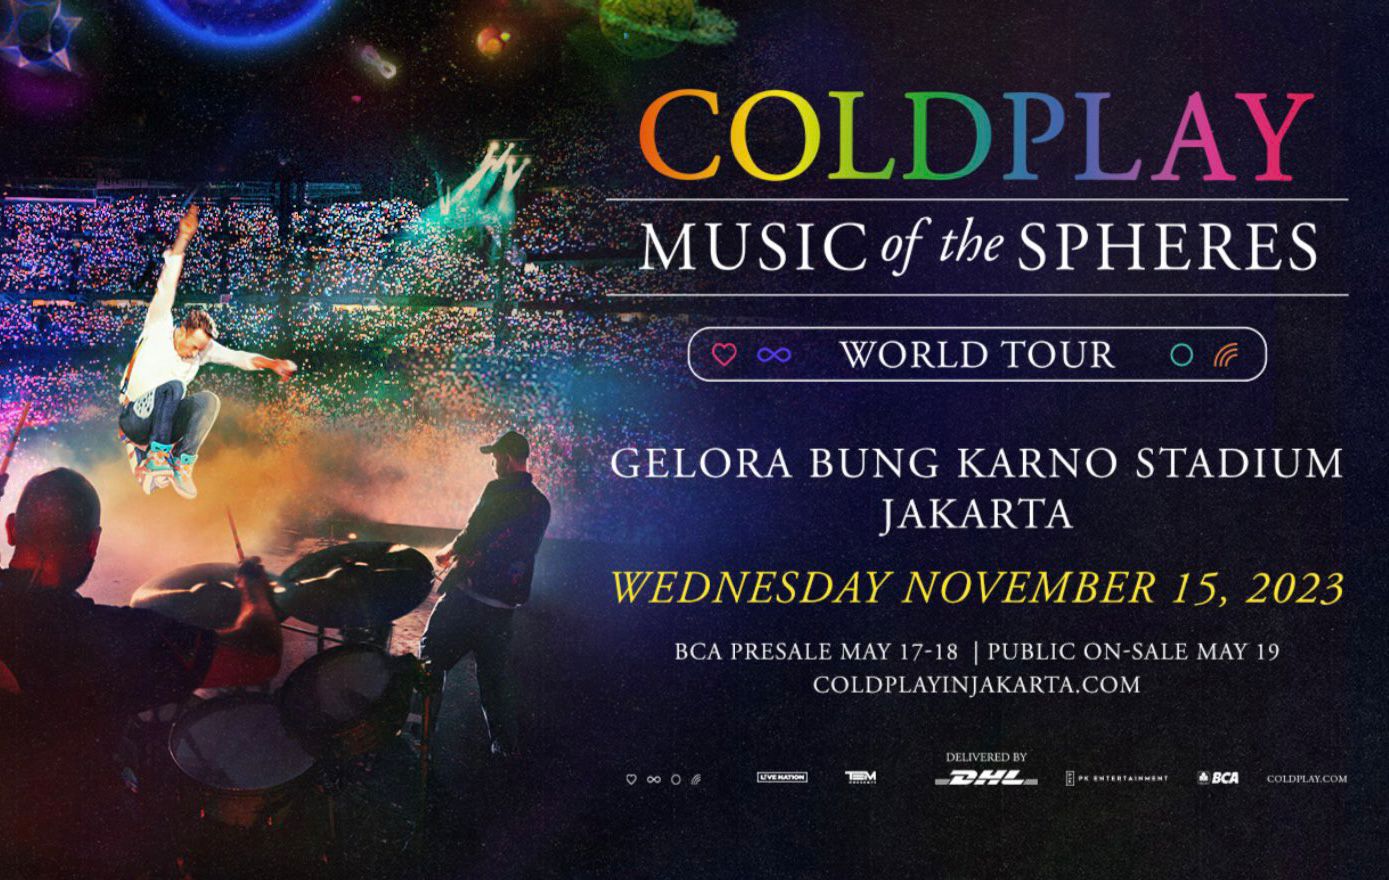 Siapa Coldplay yang Bikin Heboh Indonesia? Ayo Nabung untuk Beli Tiket Konser Coldplay   